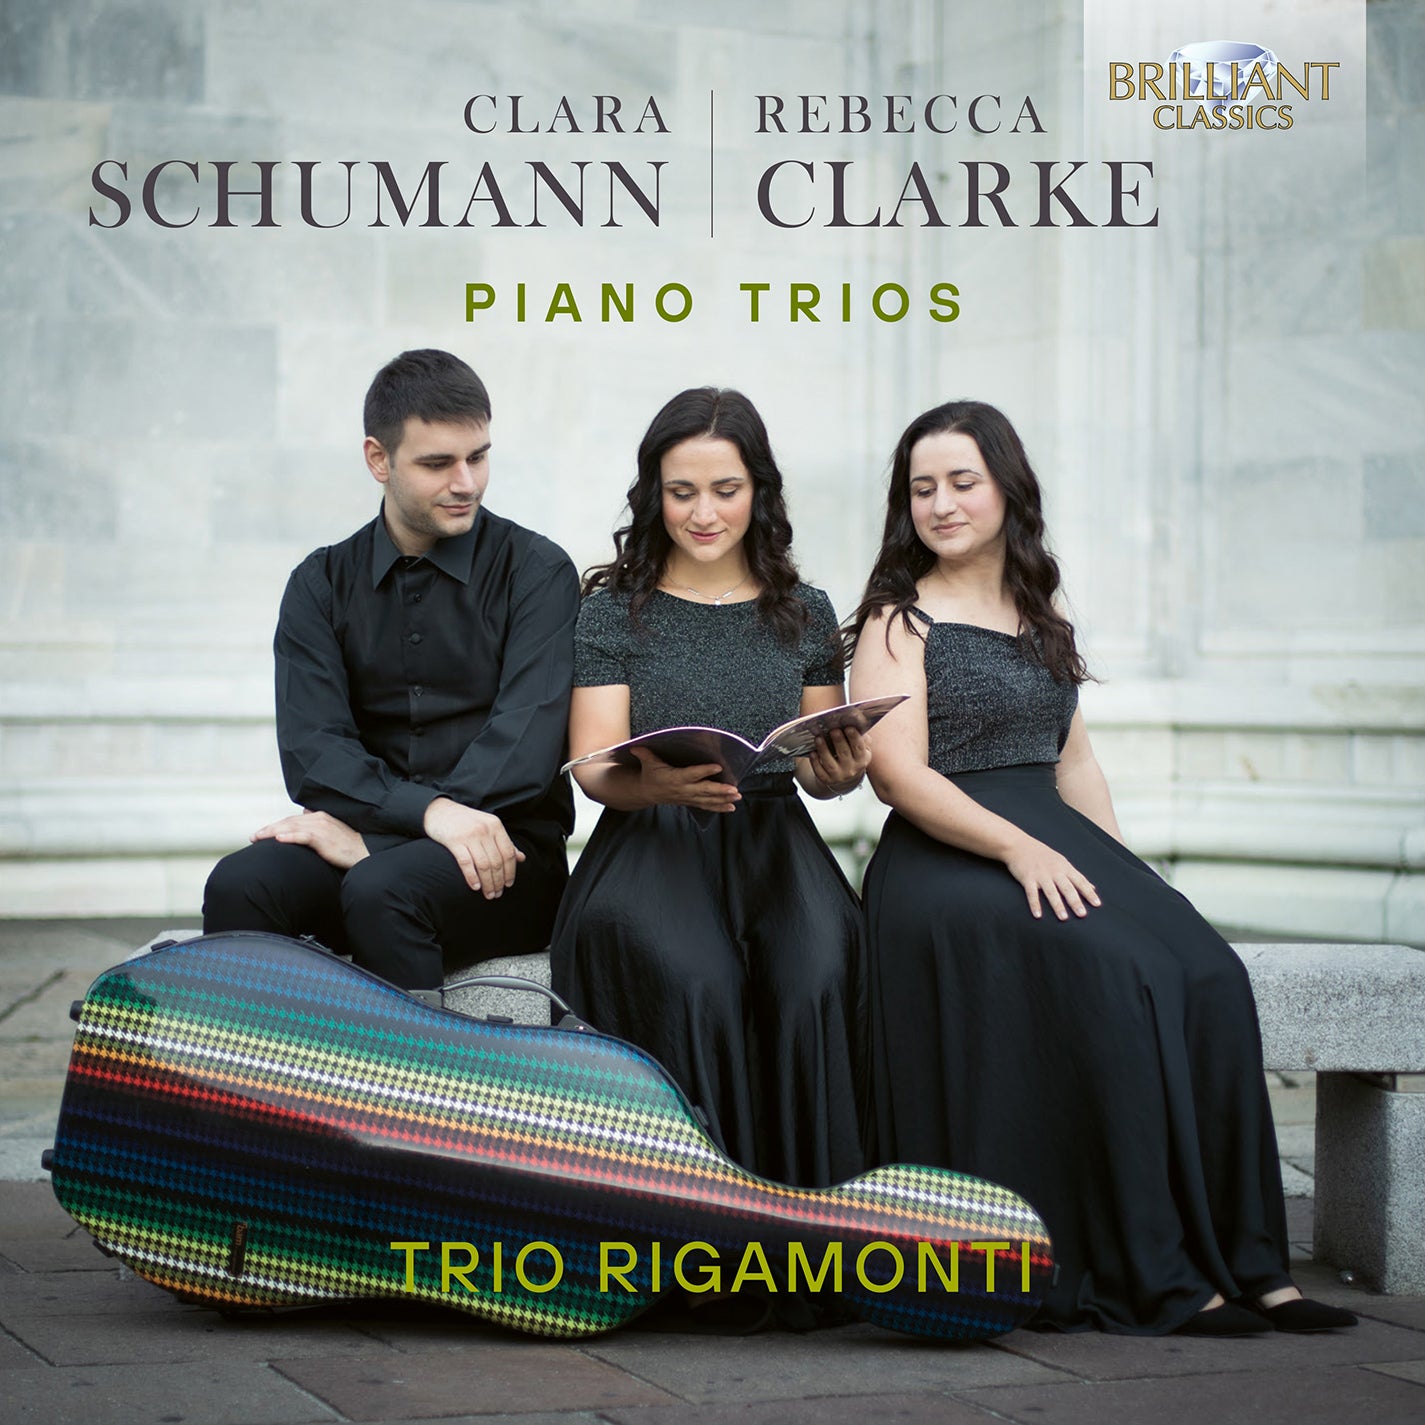 C. Schumann & Clarke: Piano Trios / Trio Rigamonti